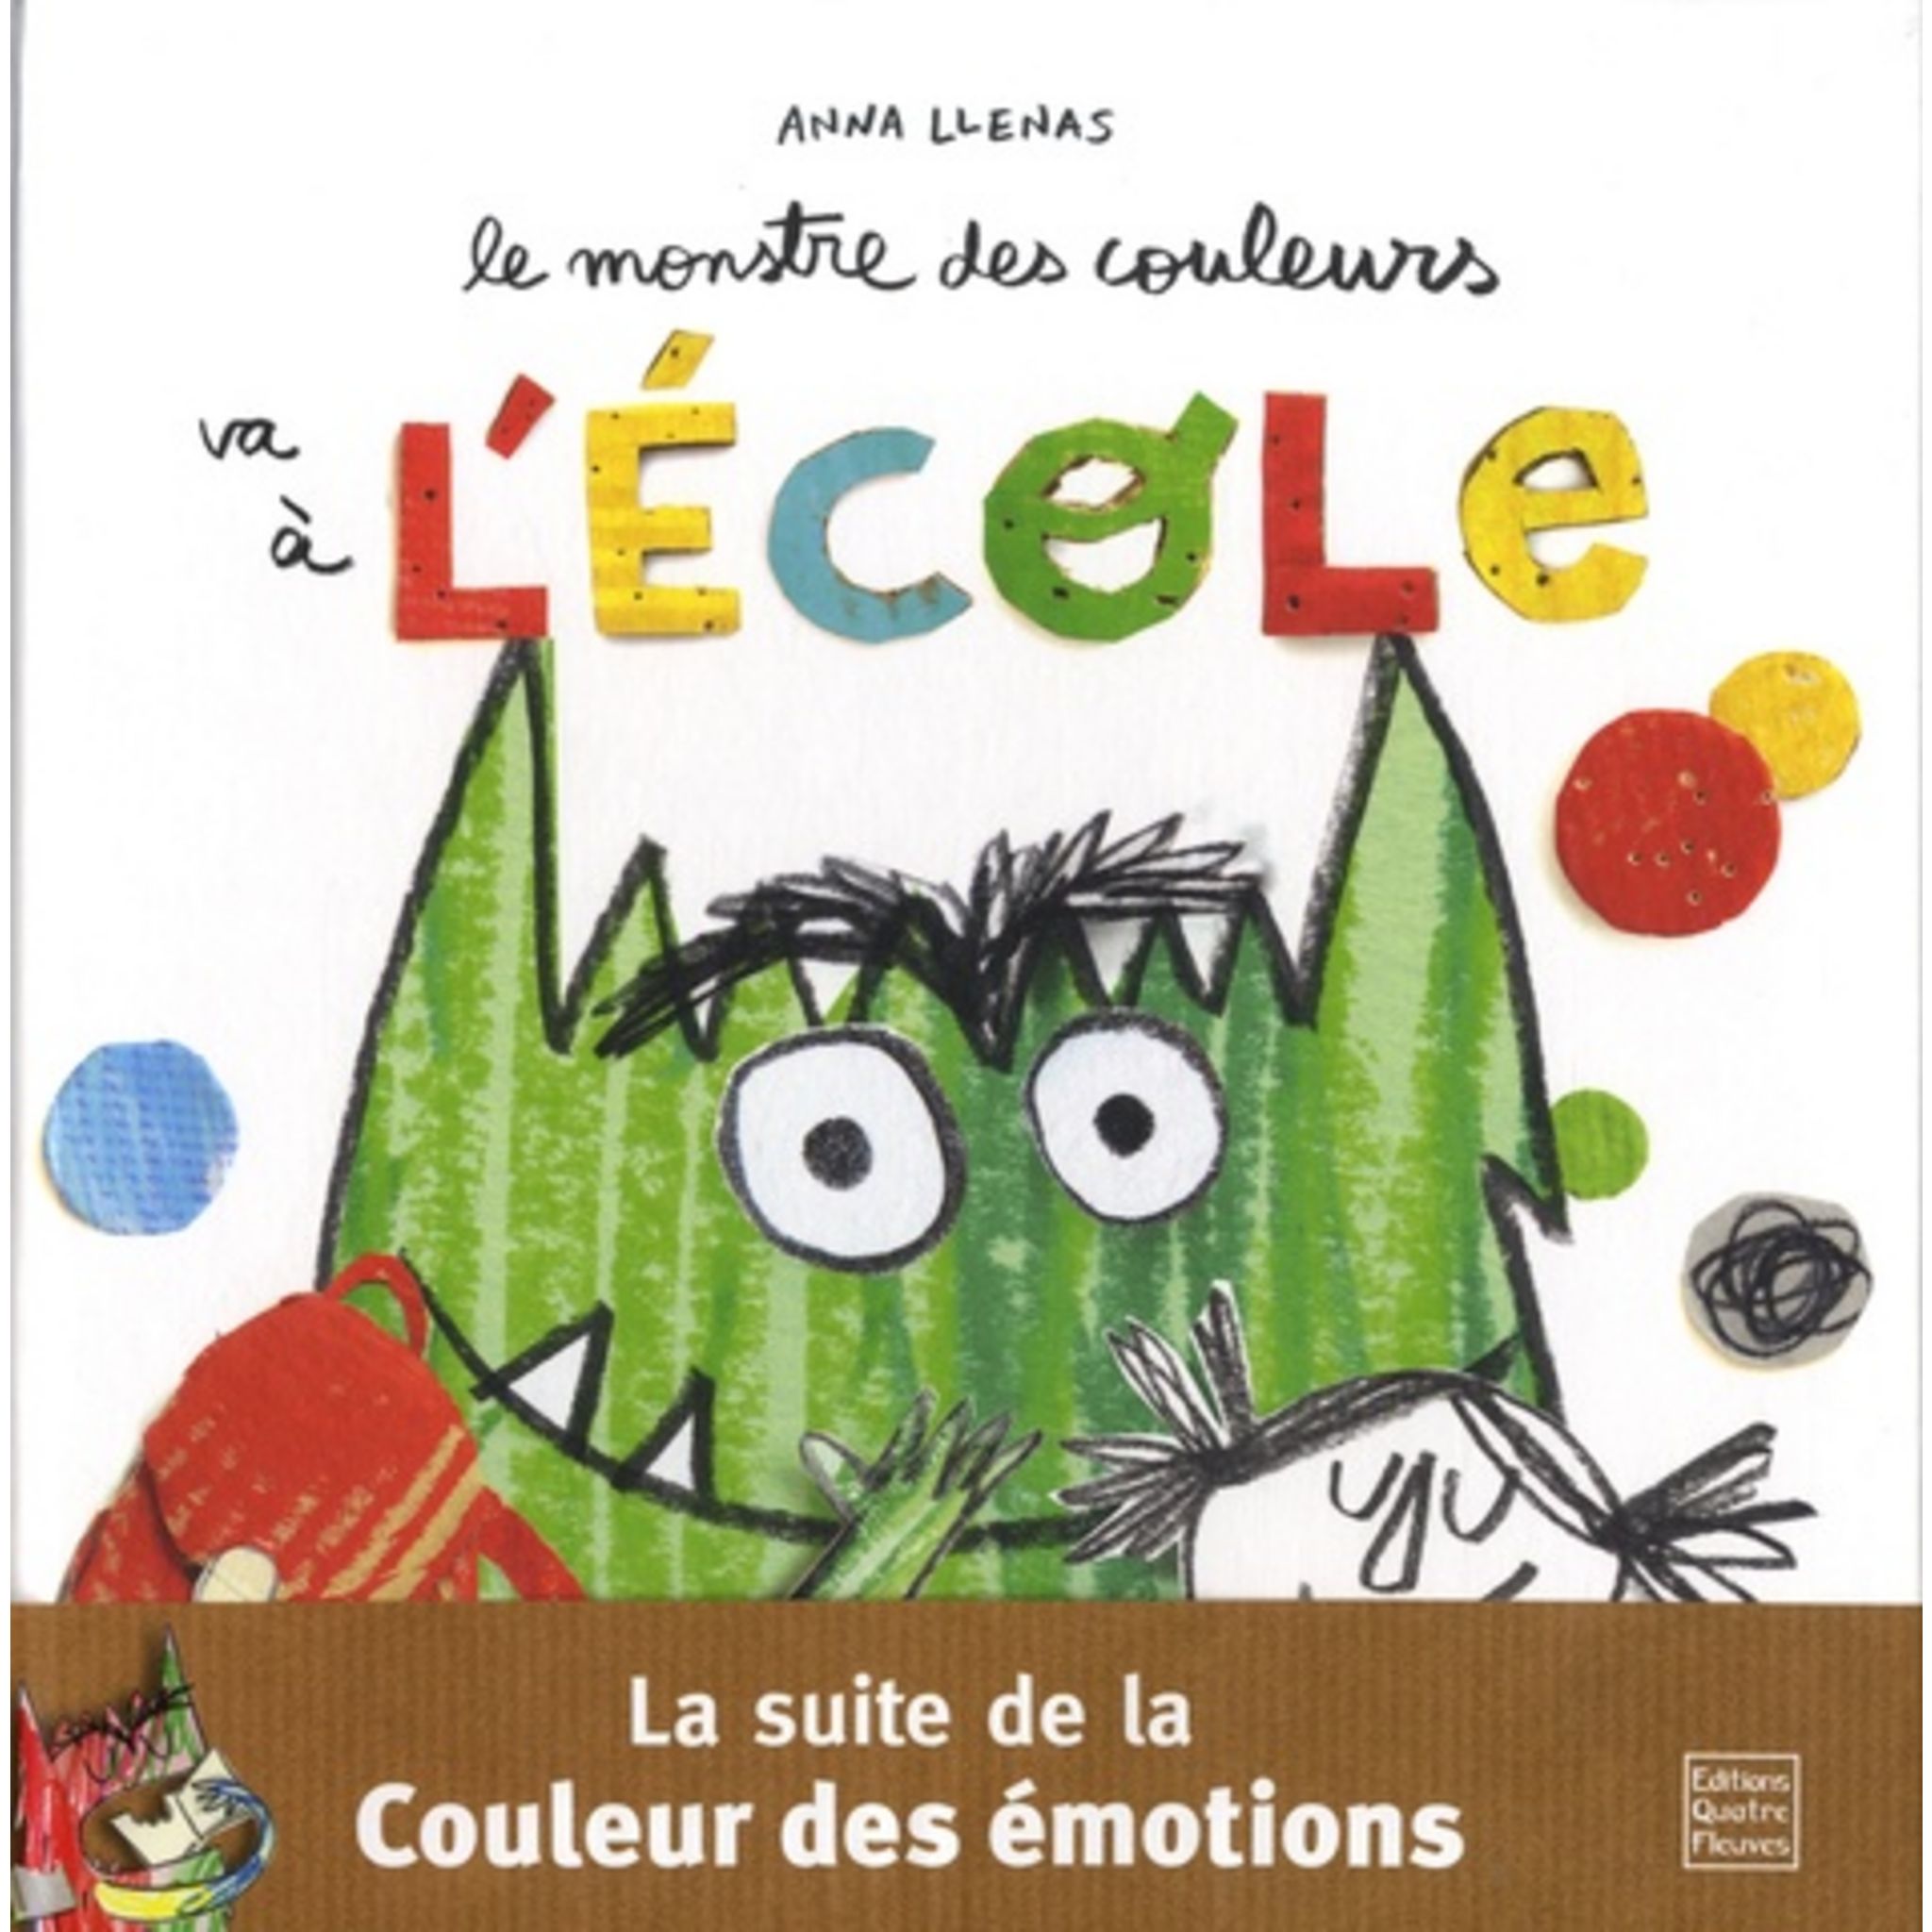 La couleur des émotions : Anna Llenas - Livres pour enfants dès 3